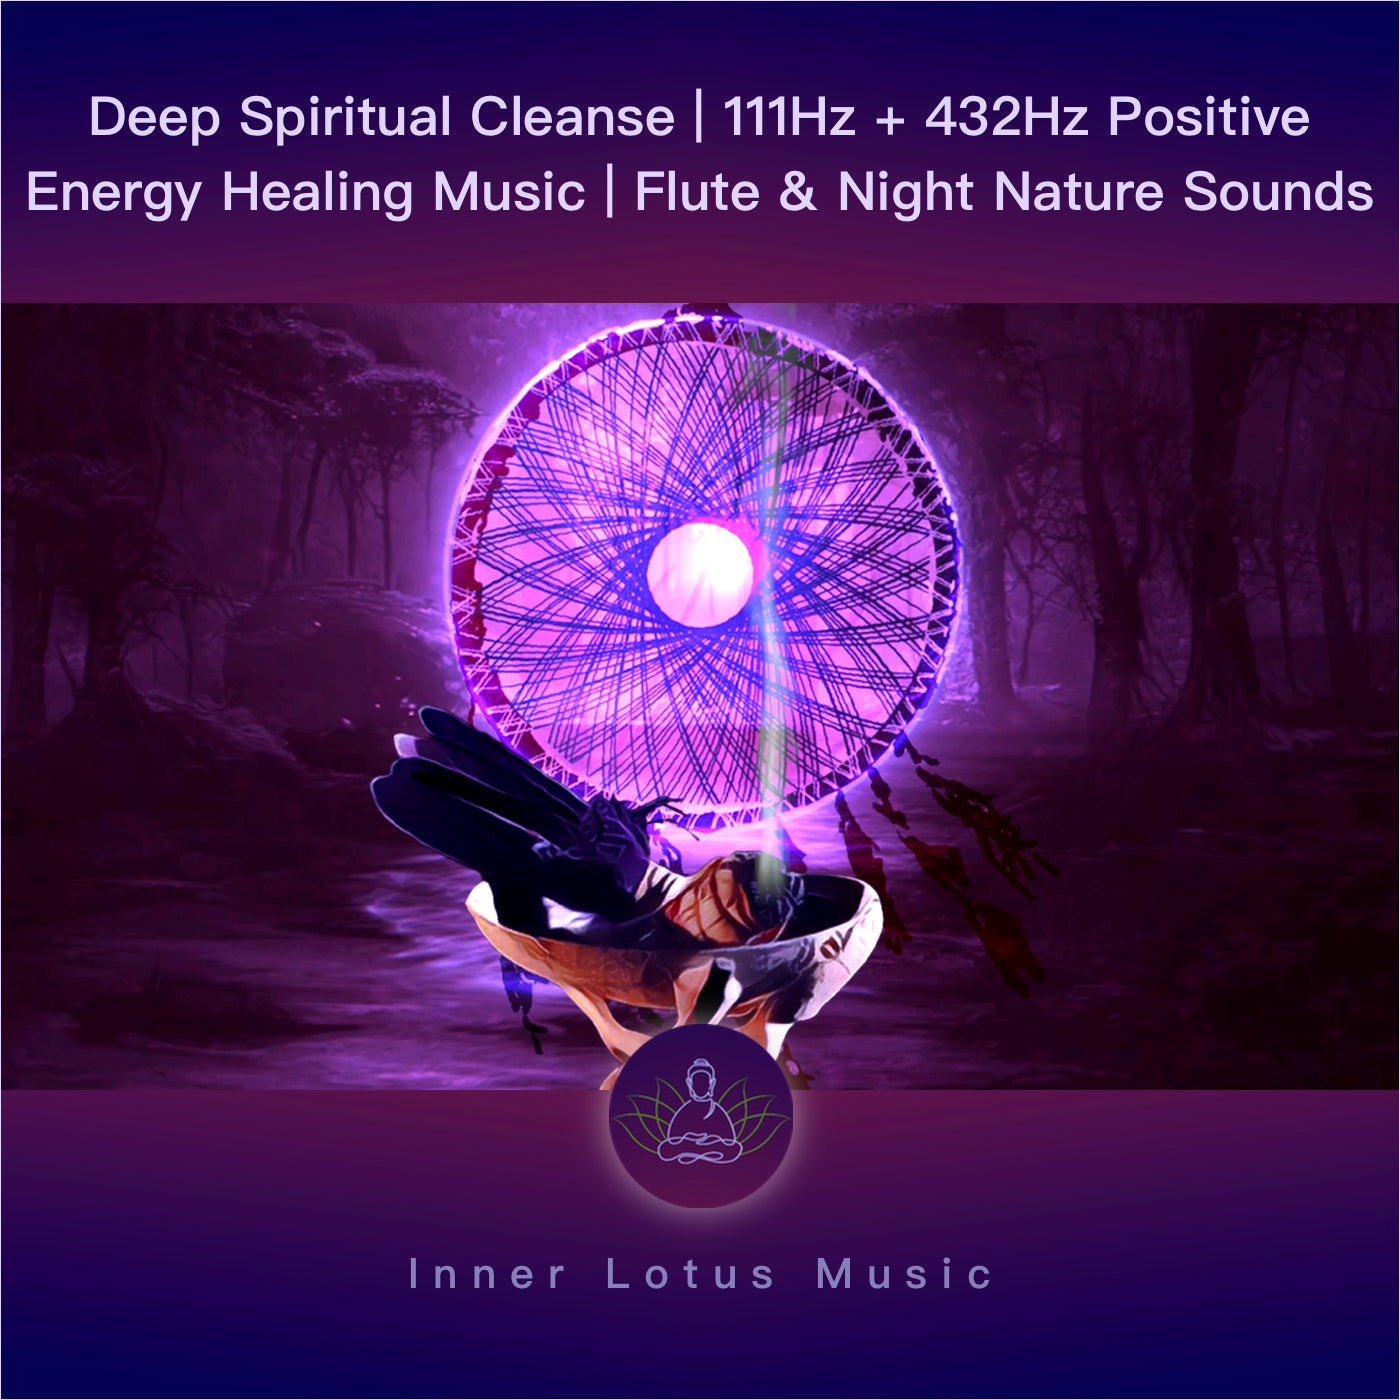 Tiefe Spirituelle Reinigung | 111Hz + 432Hz Musik & Positive Energie Heilung | Flöte, Naturgeräusche